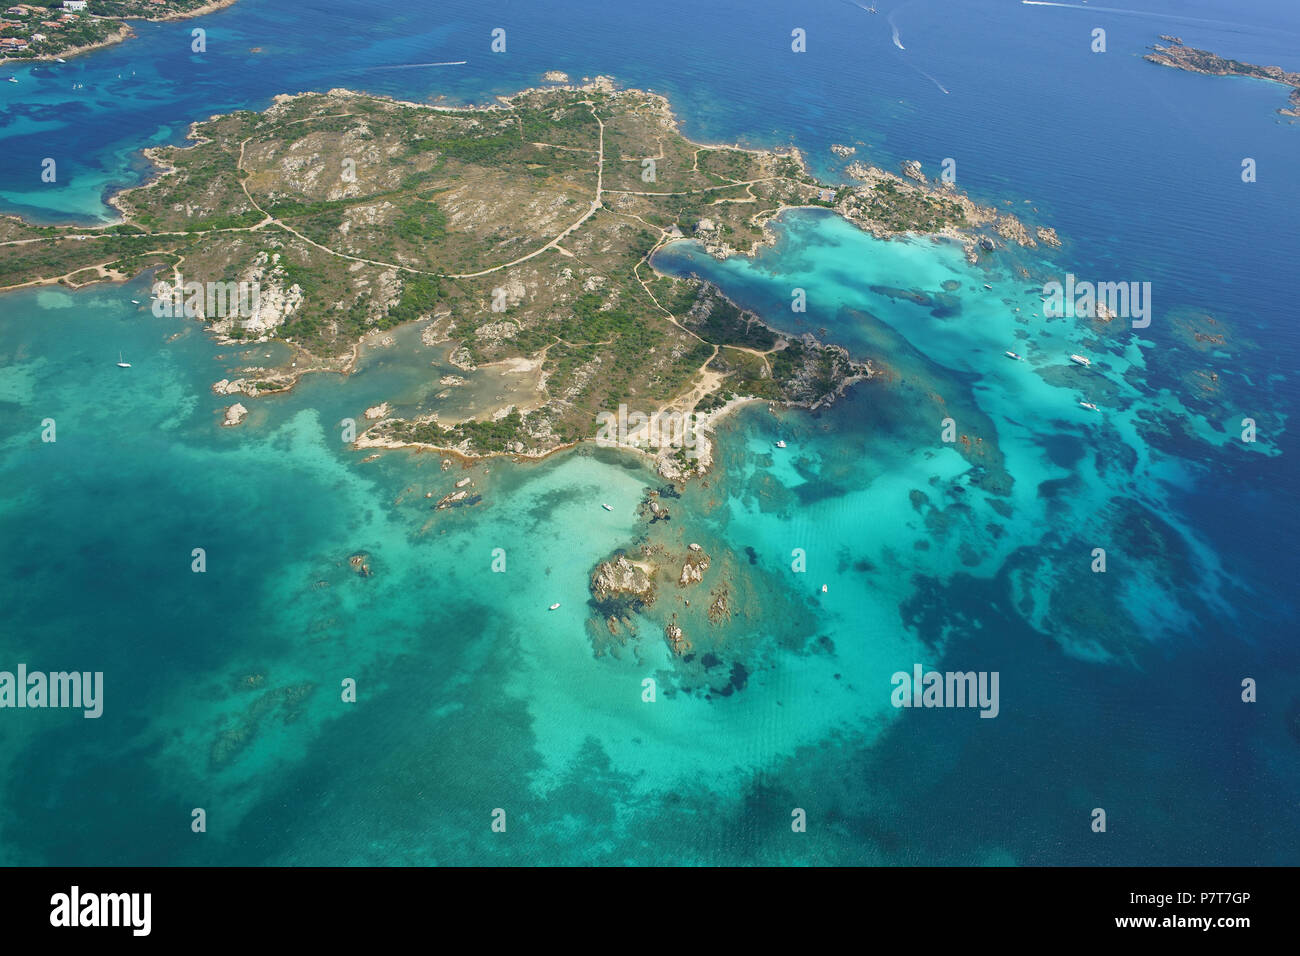 VISTA AEREA. Isola disabitata circondata da acque turchesi. Isola dei Giardini, Arcipelago la Maddalena, Provincia di Sassari, Sardegna, Italia. Foto Stock